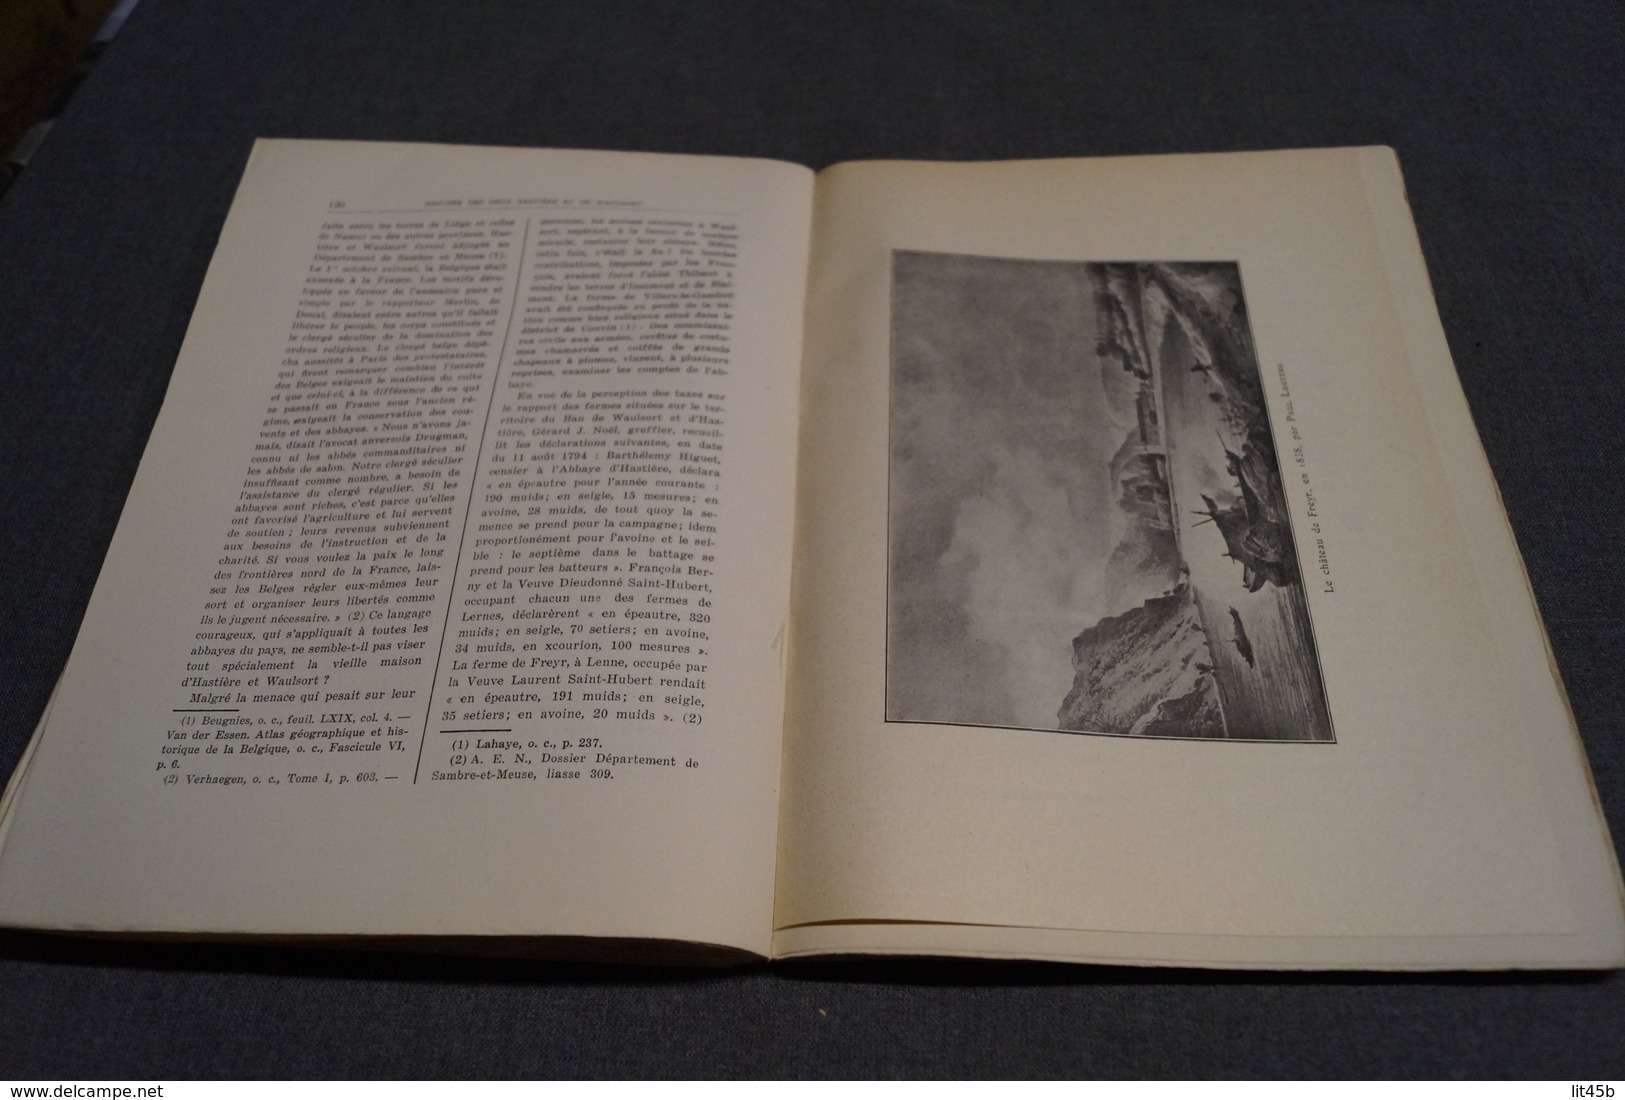 Histoire des deux Hastières et Waulsort,Namur 1927,Conte Xavier Carton de Wiart,199 pages,26 cm. sur 19 Cm.